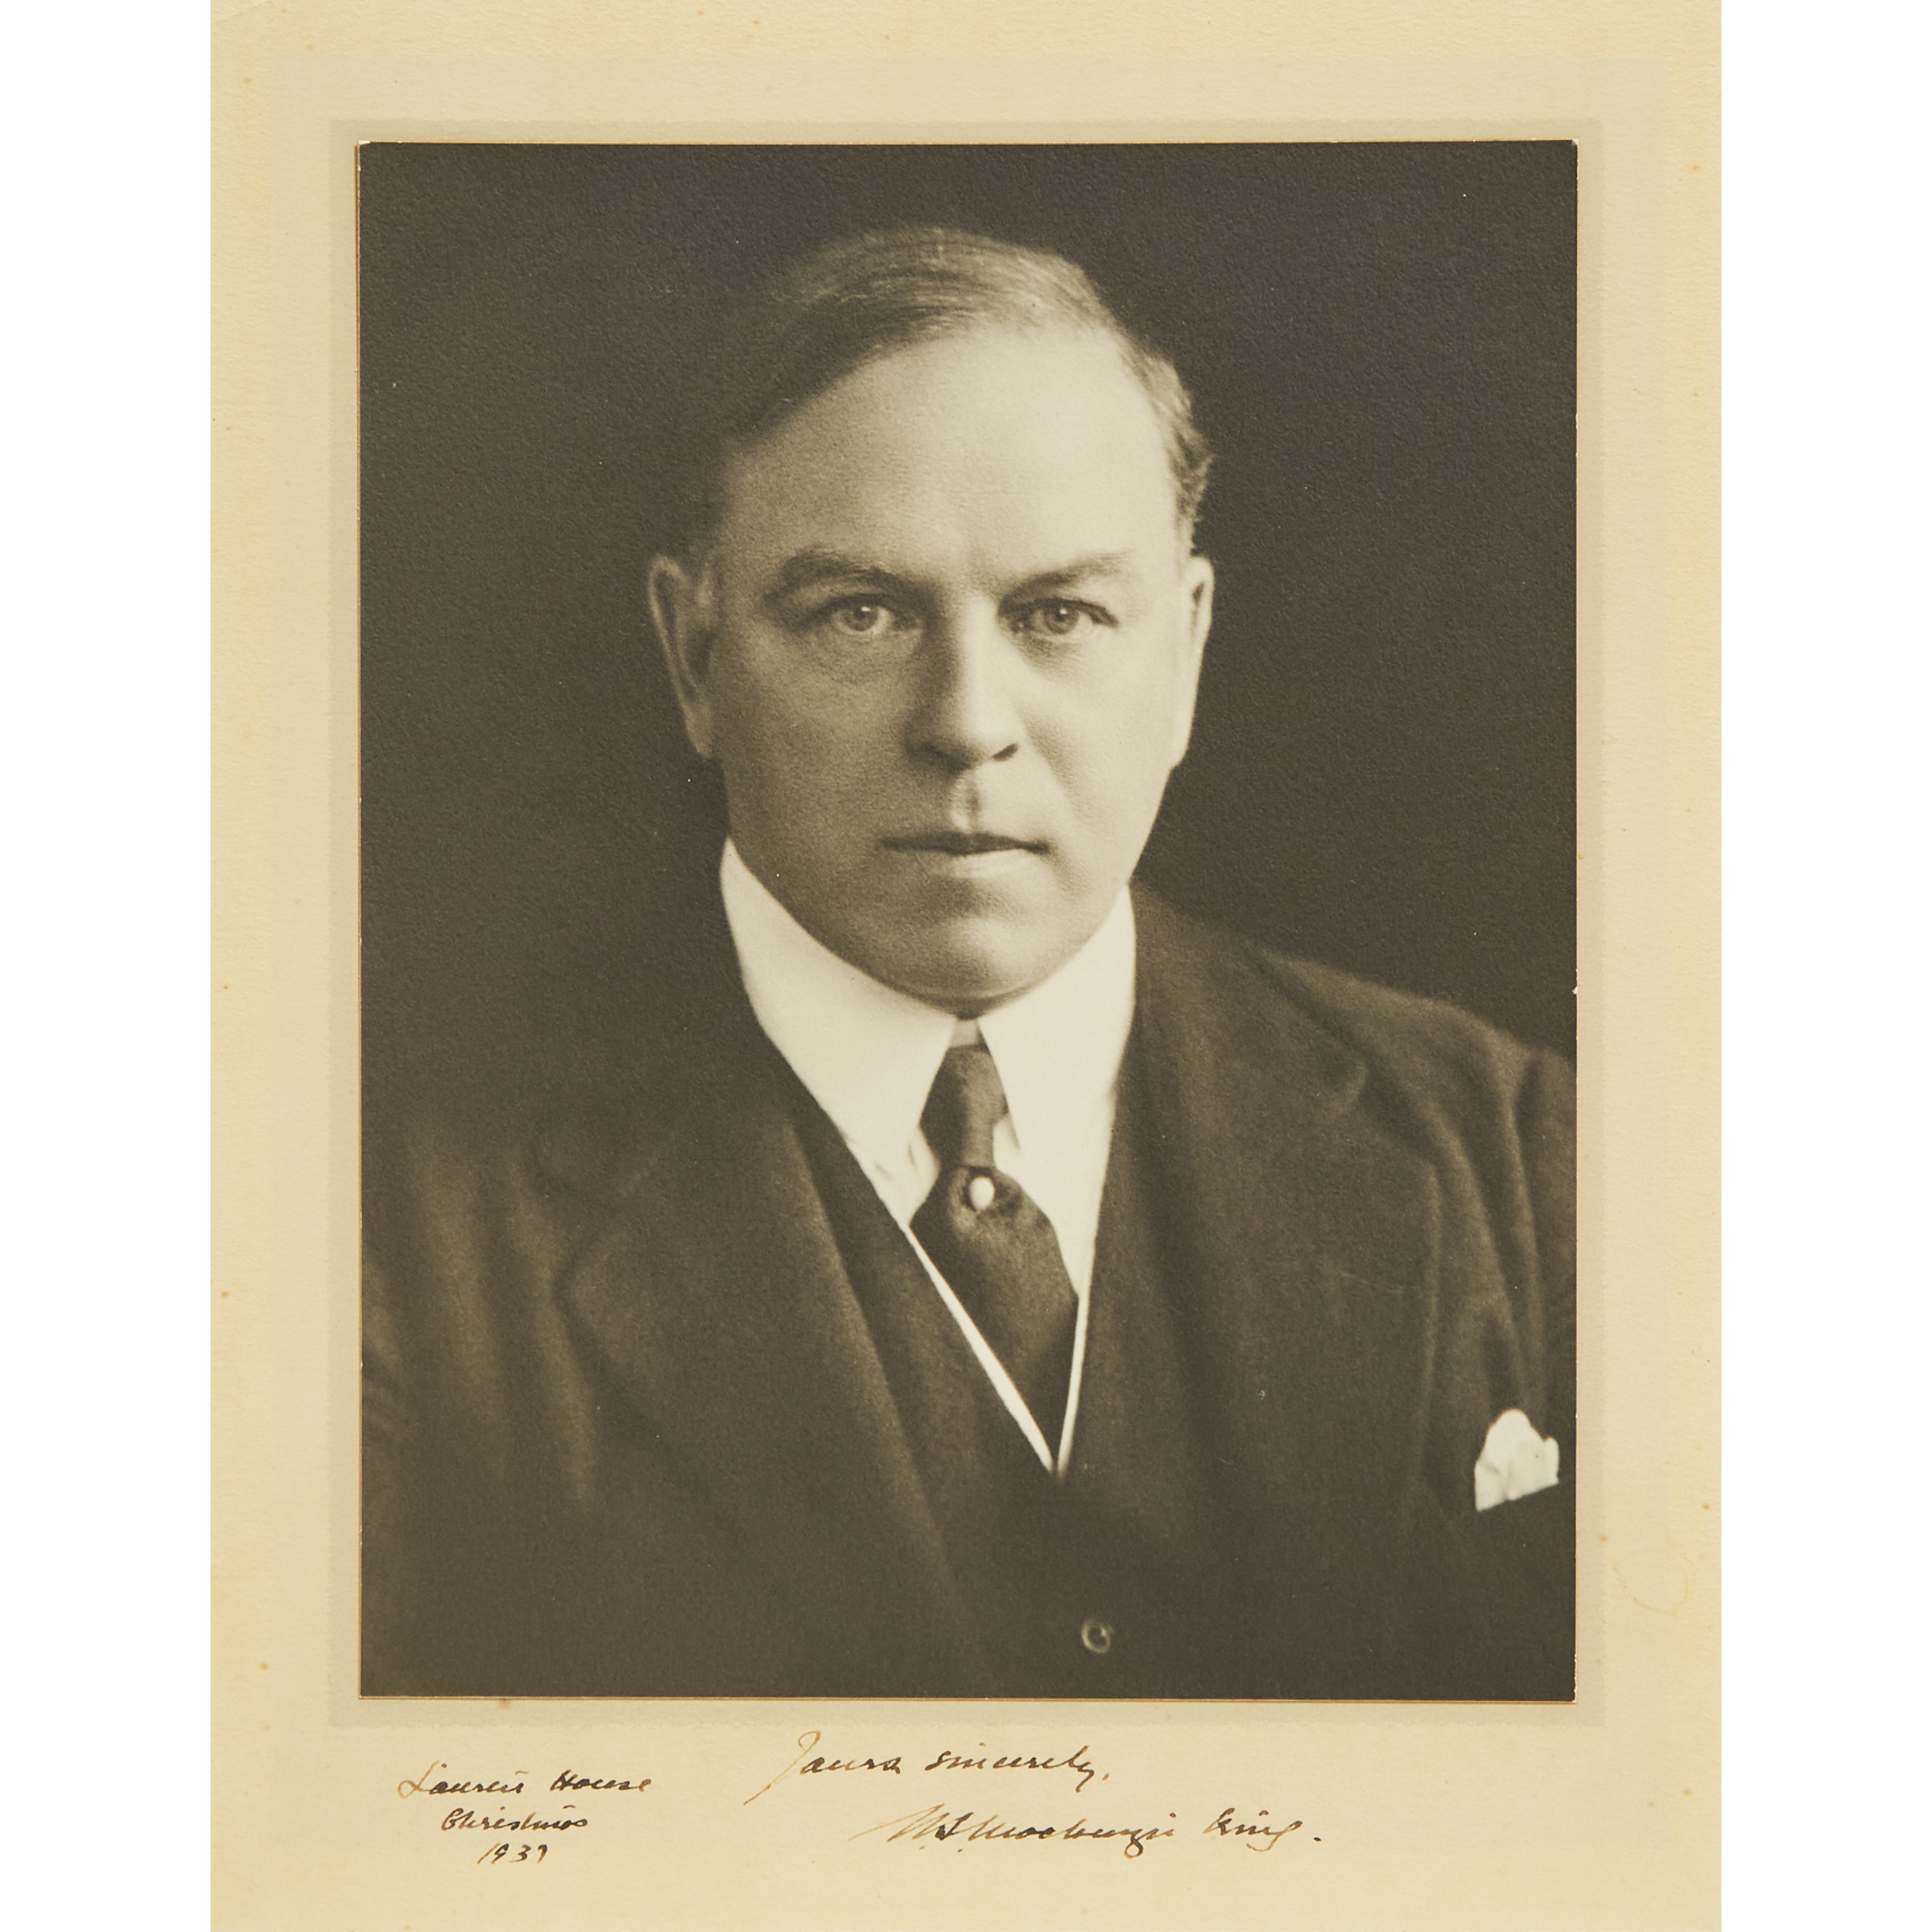 Mackenzie King Signed Photographic Portrait, 1939